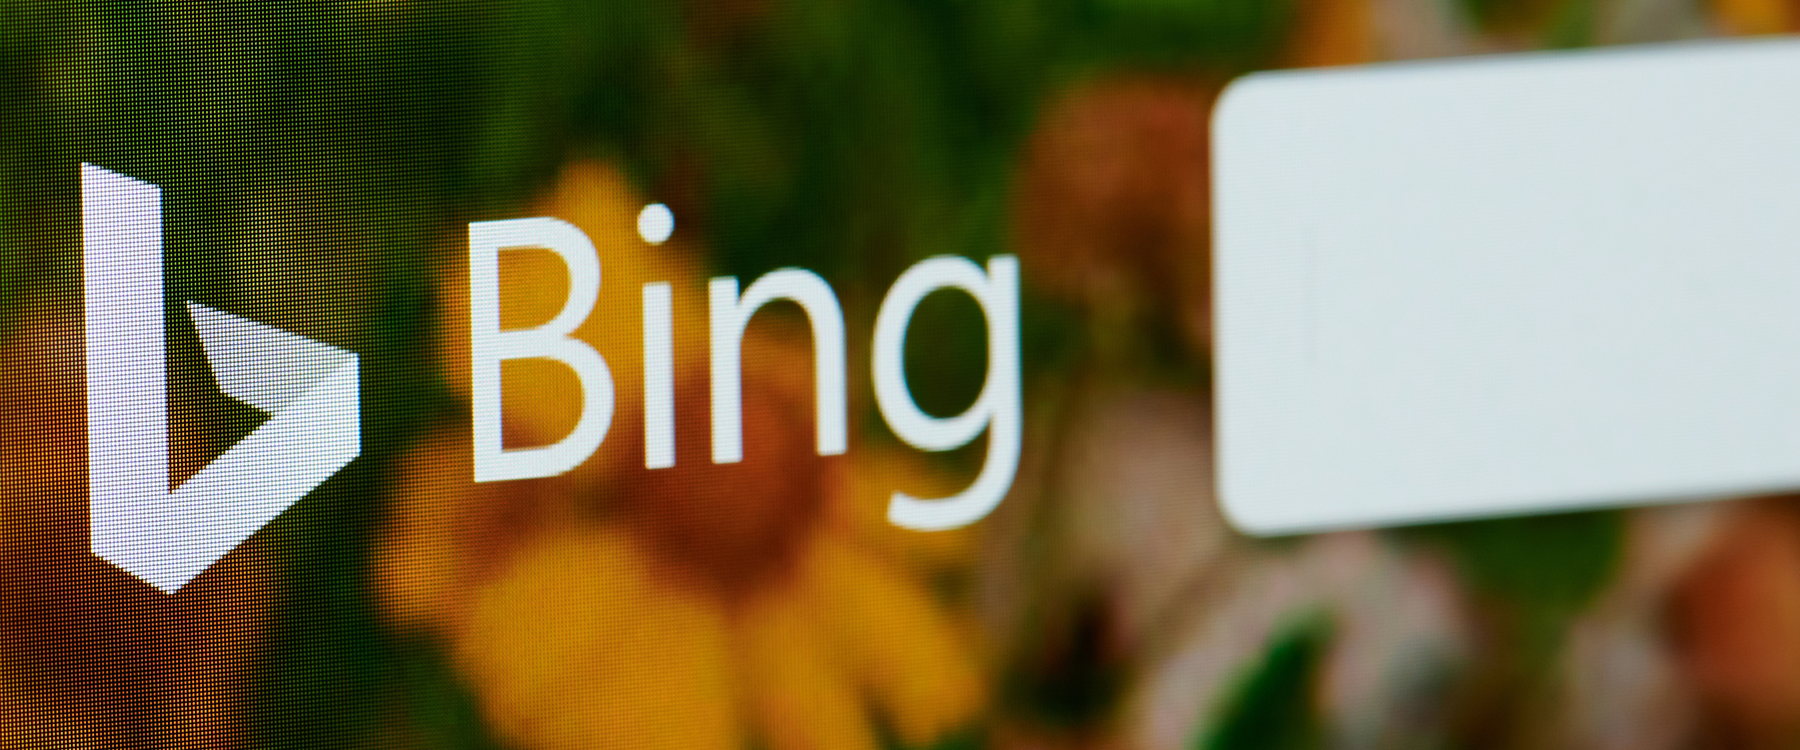 Bing for legal websites